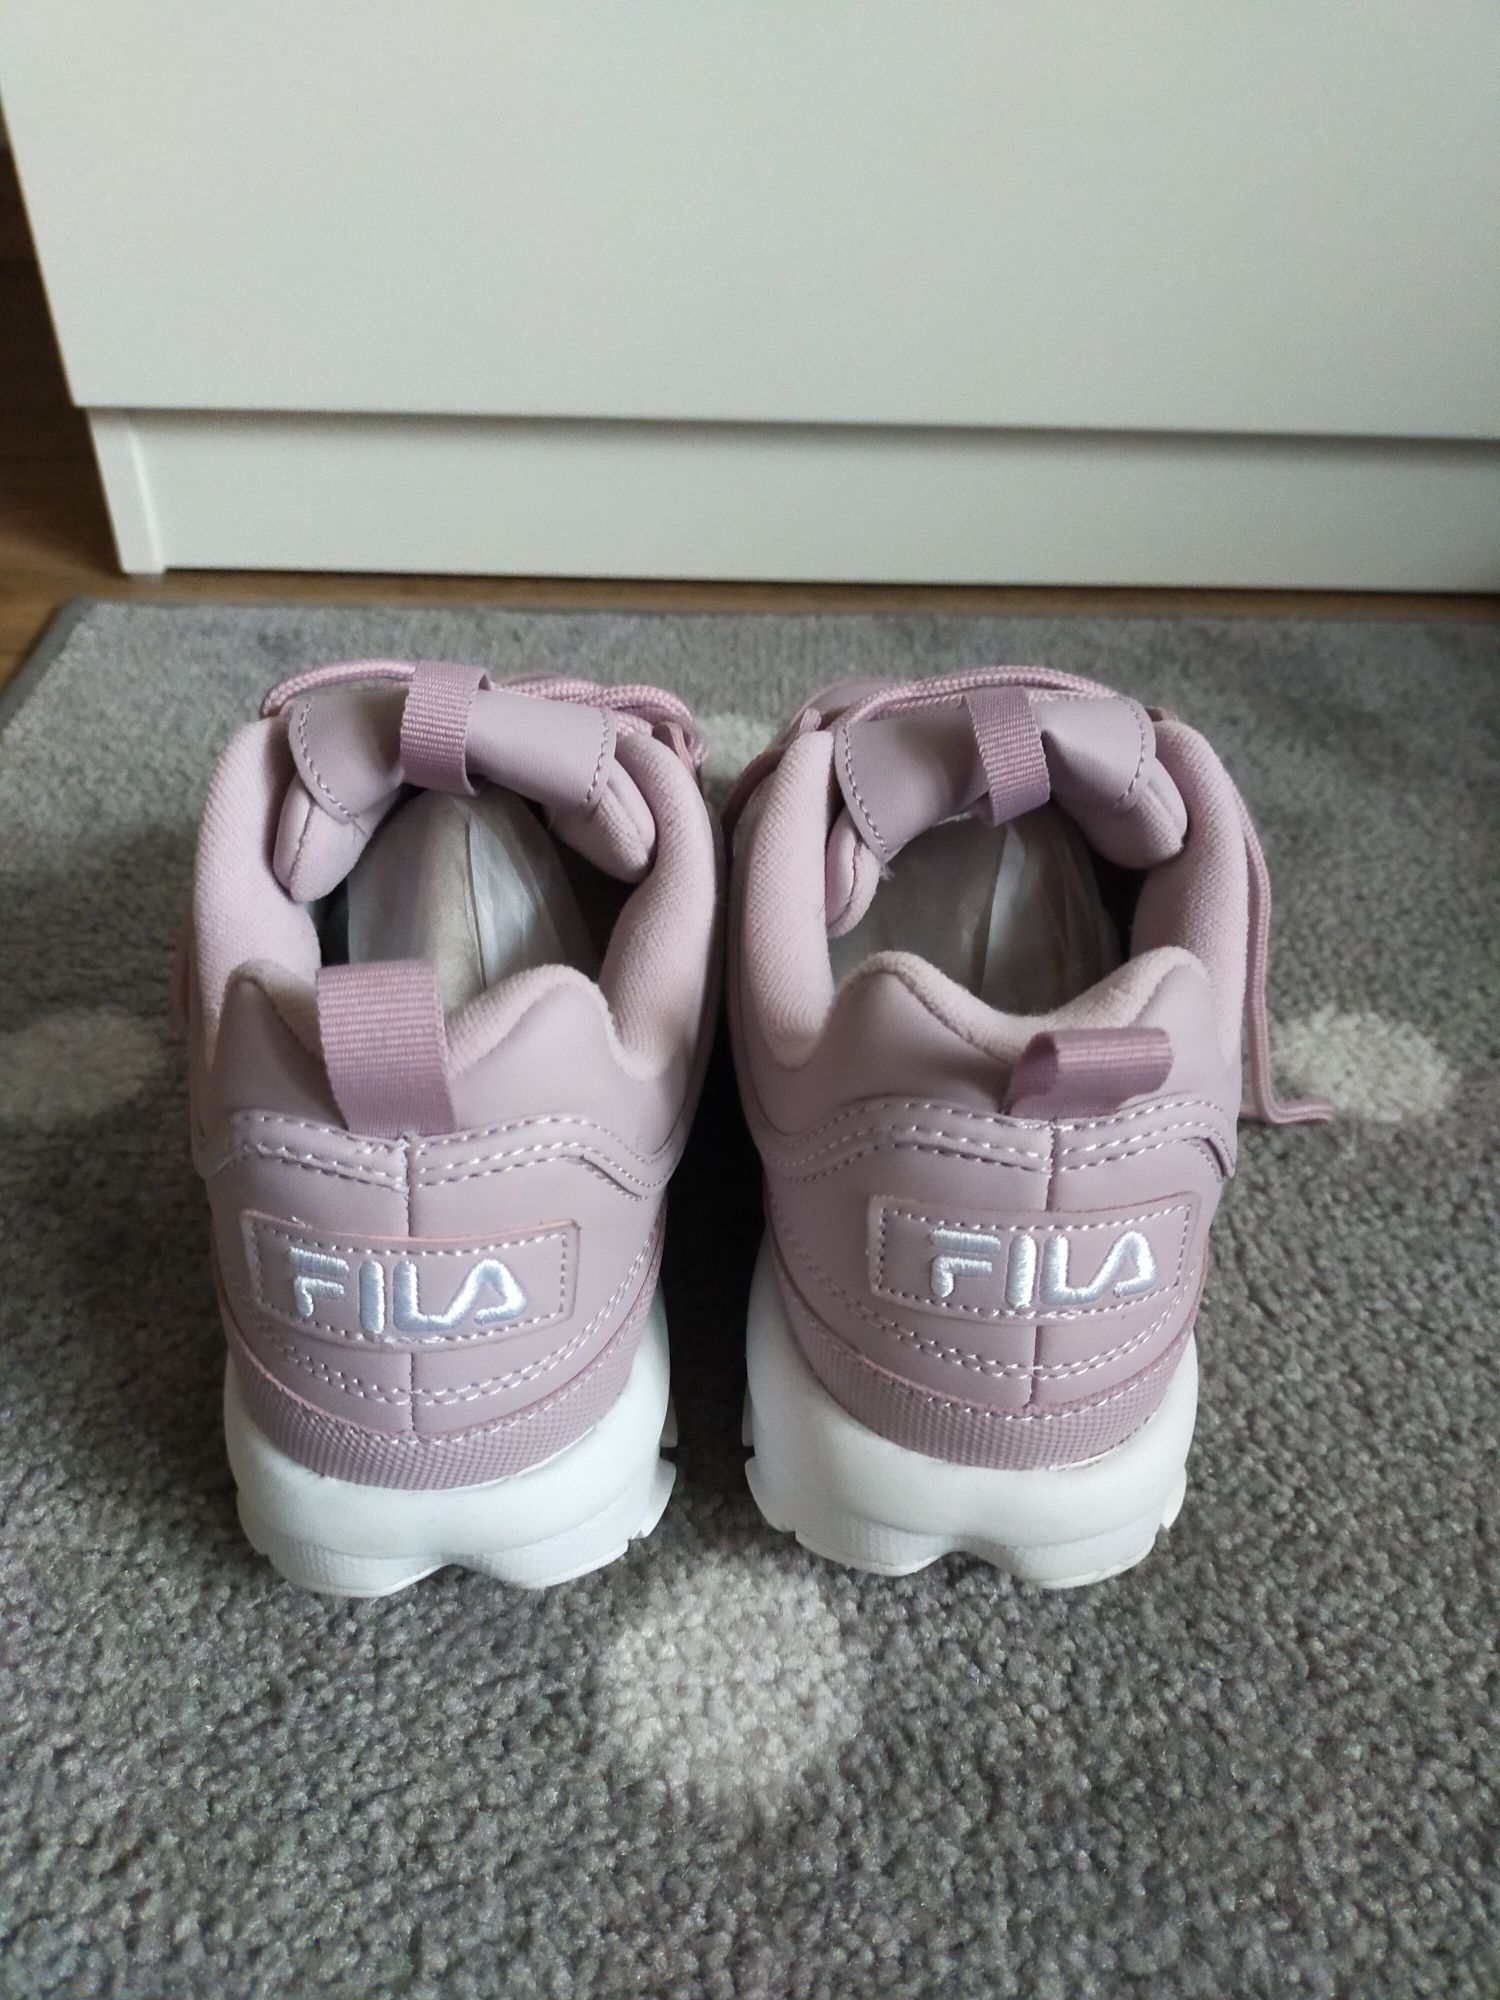 NOWE FILA Disruptor 37 38 trampki buty adidasy sneakersy pudrowy róż